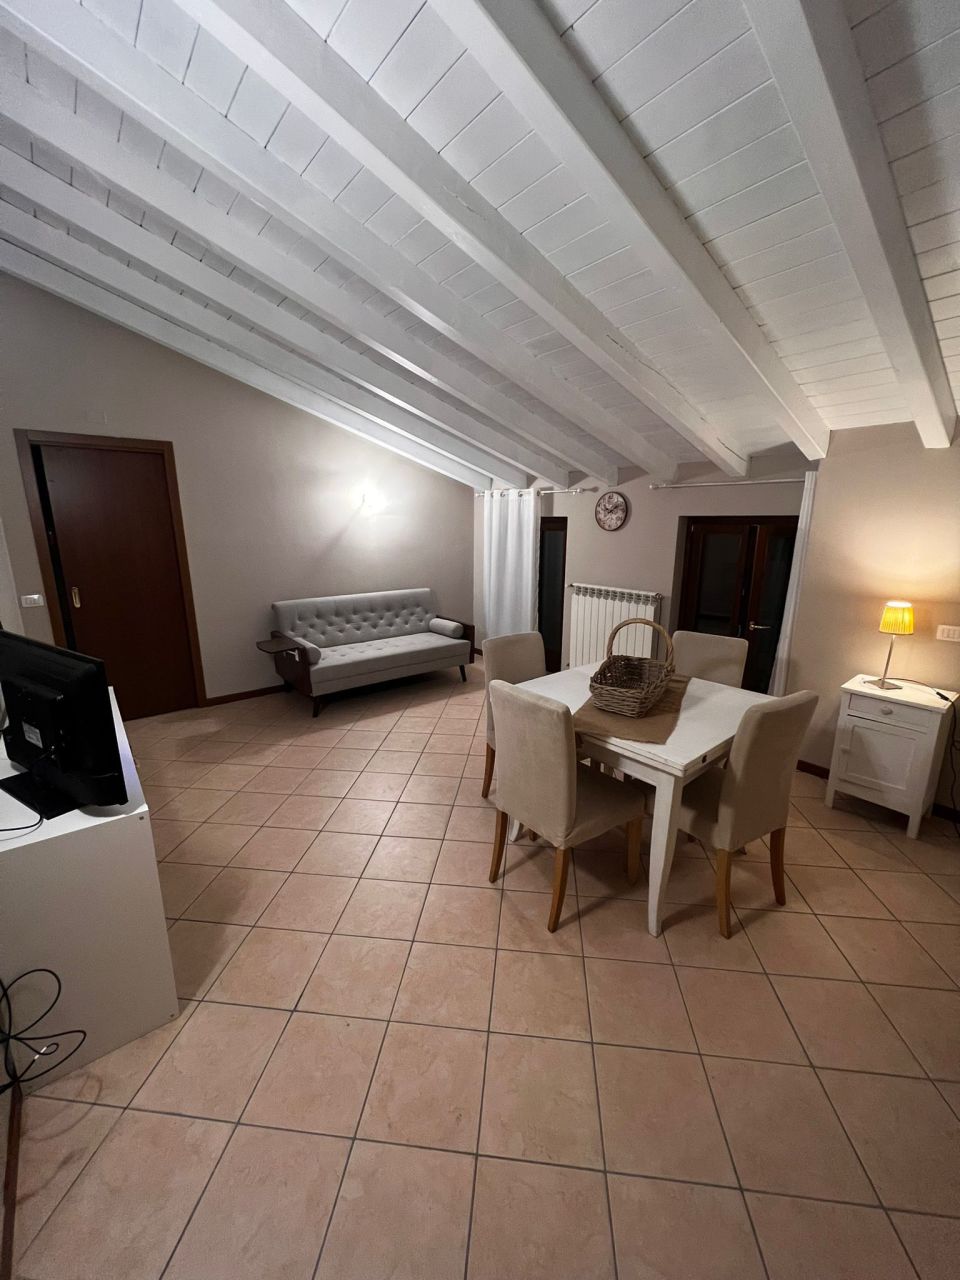 Appartamento in vendita a Villanuova sul Clisi, 2 locali, prezzo € 98.000 | PortaleAgenzieImmobiliari.it